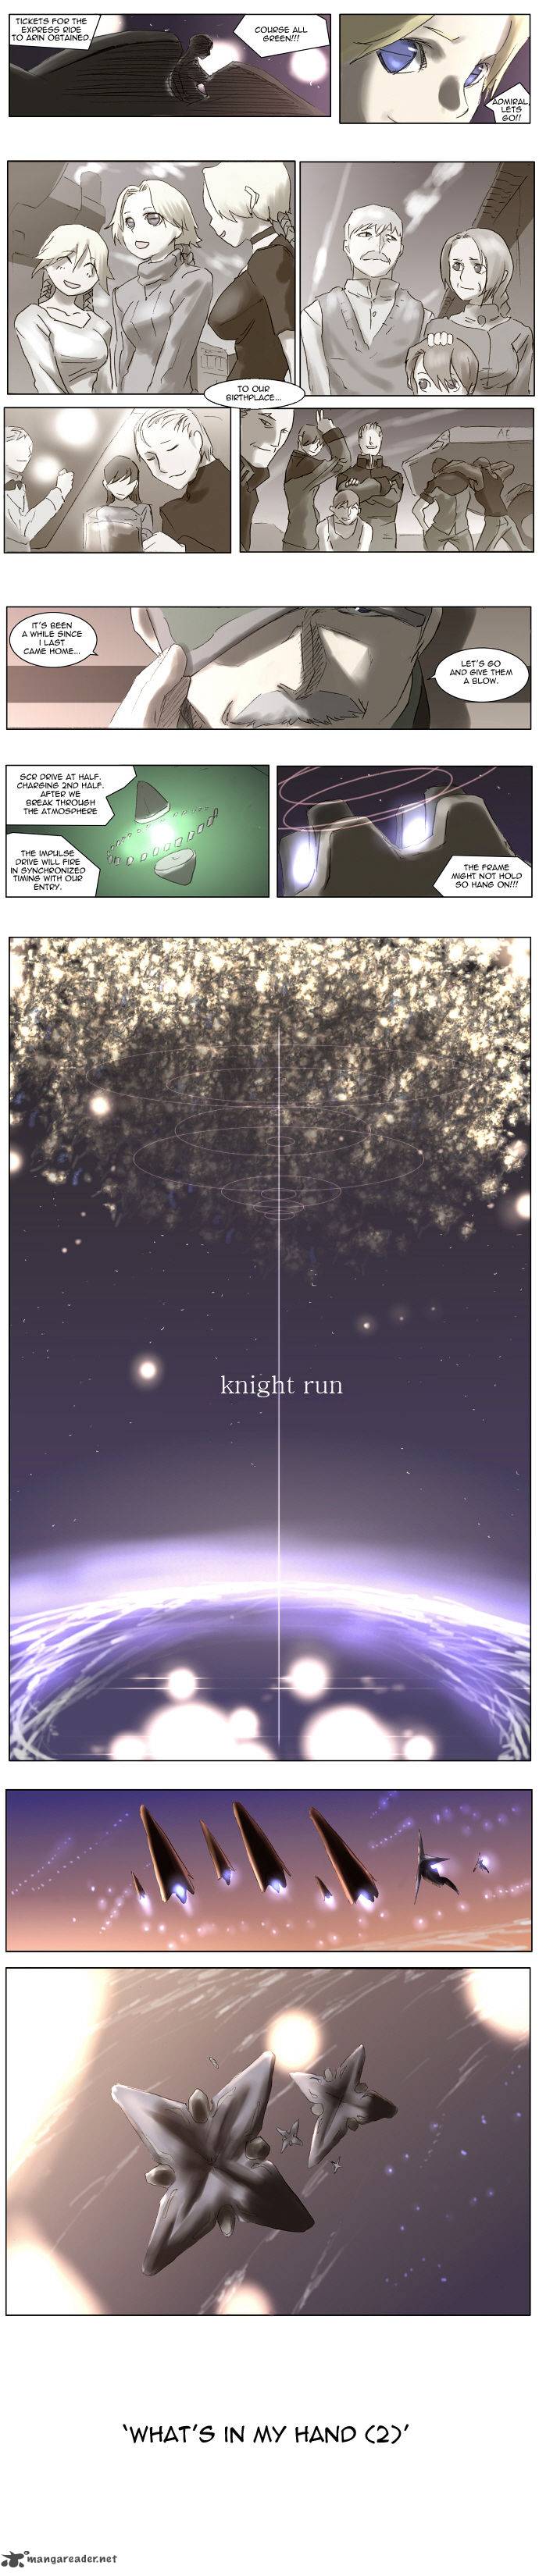 knight_run_70_2